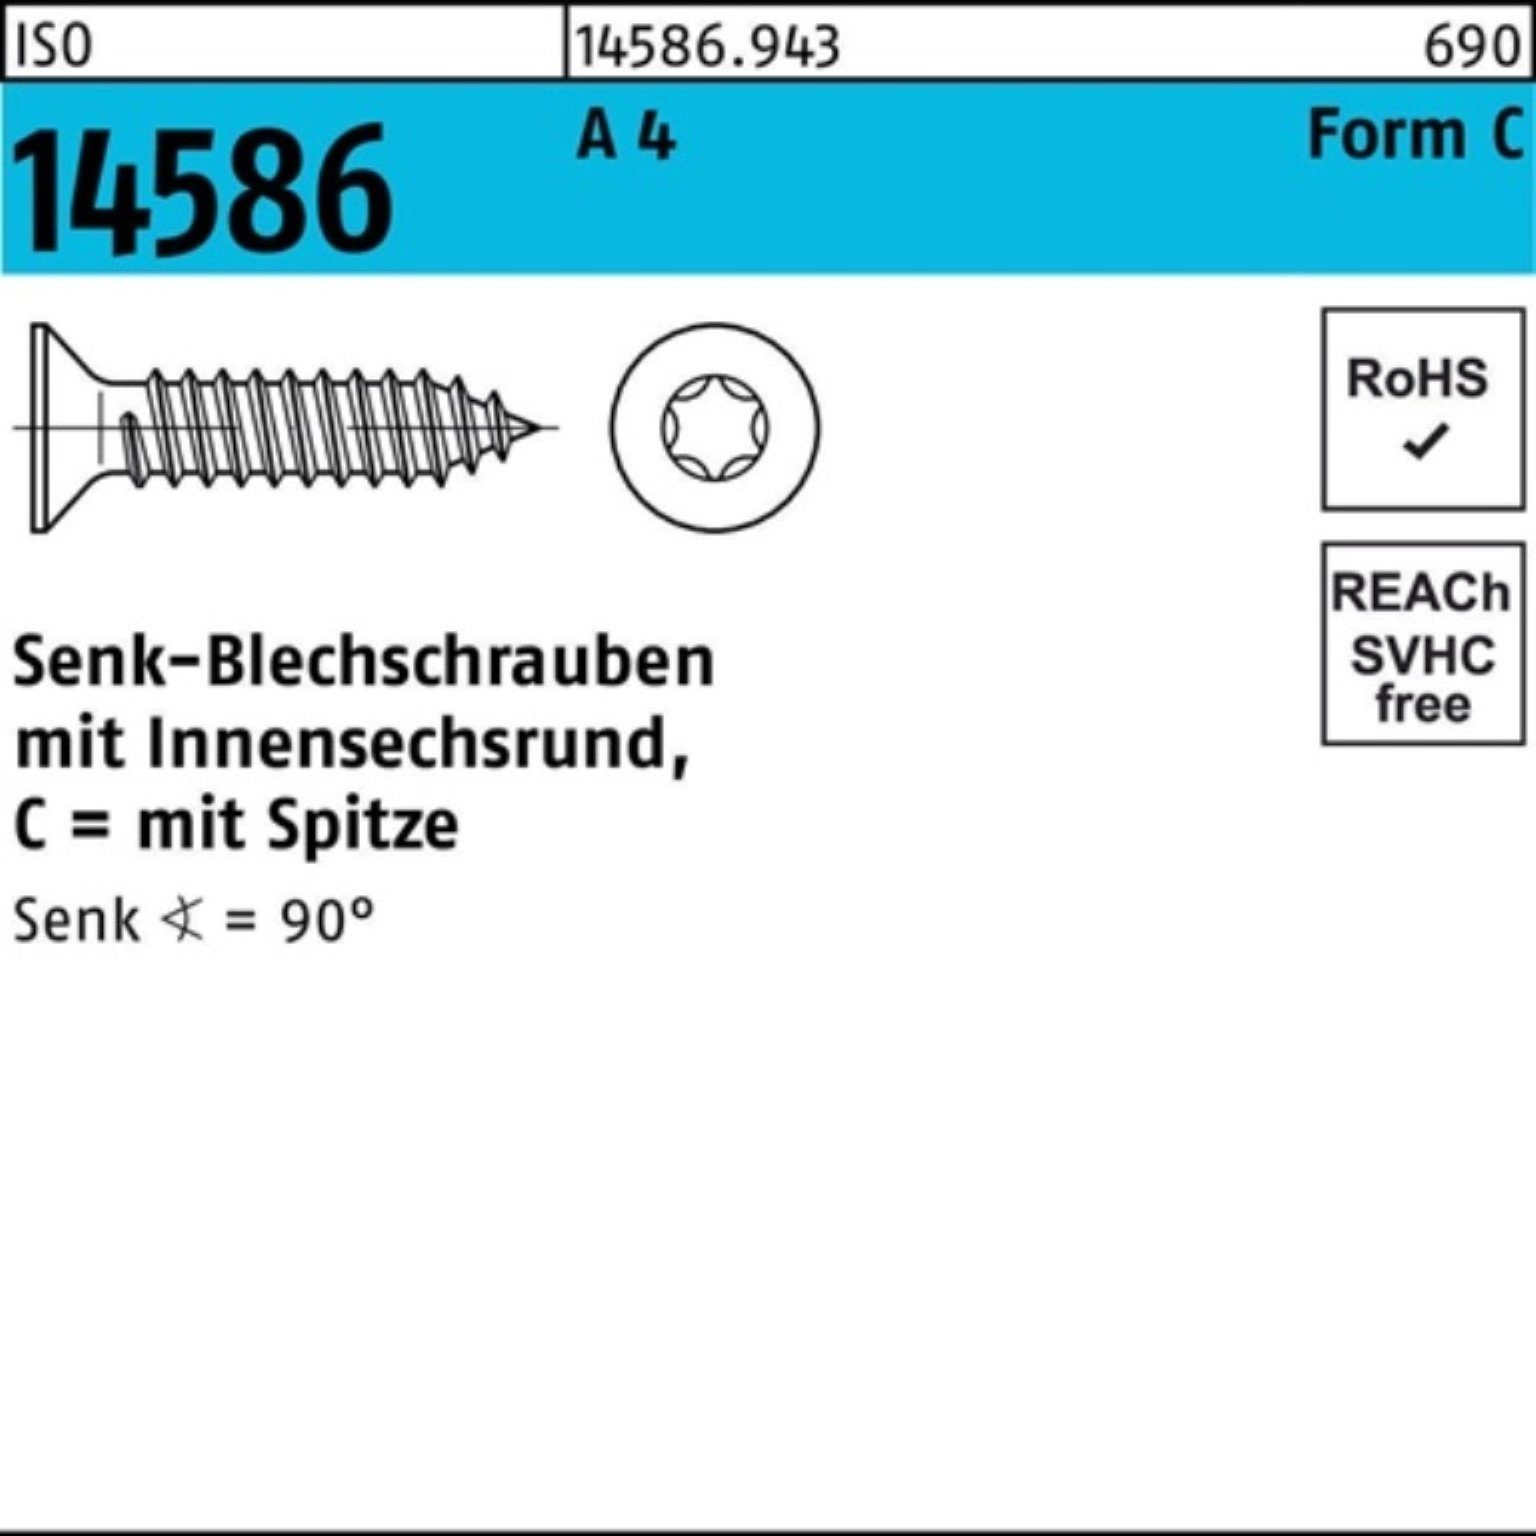 Reyher Schraube 250er Pack Senkblechschraube ISO 14586 ISR/Spitze 4,8x 60-T25 A 4 250